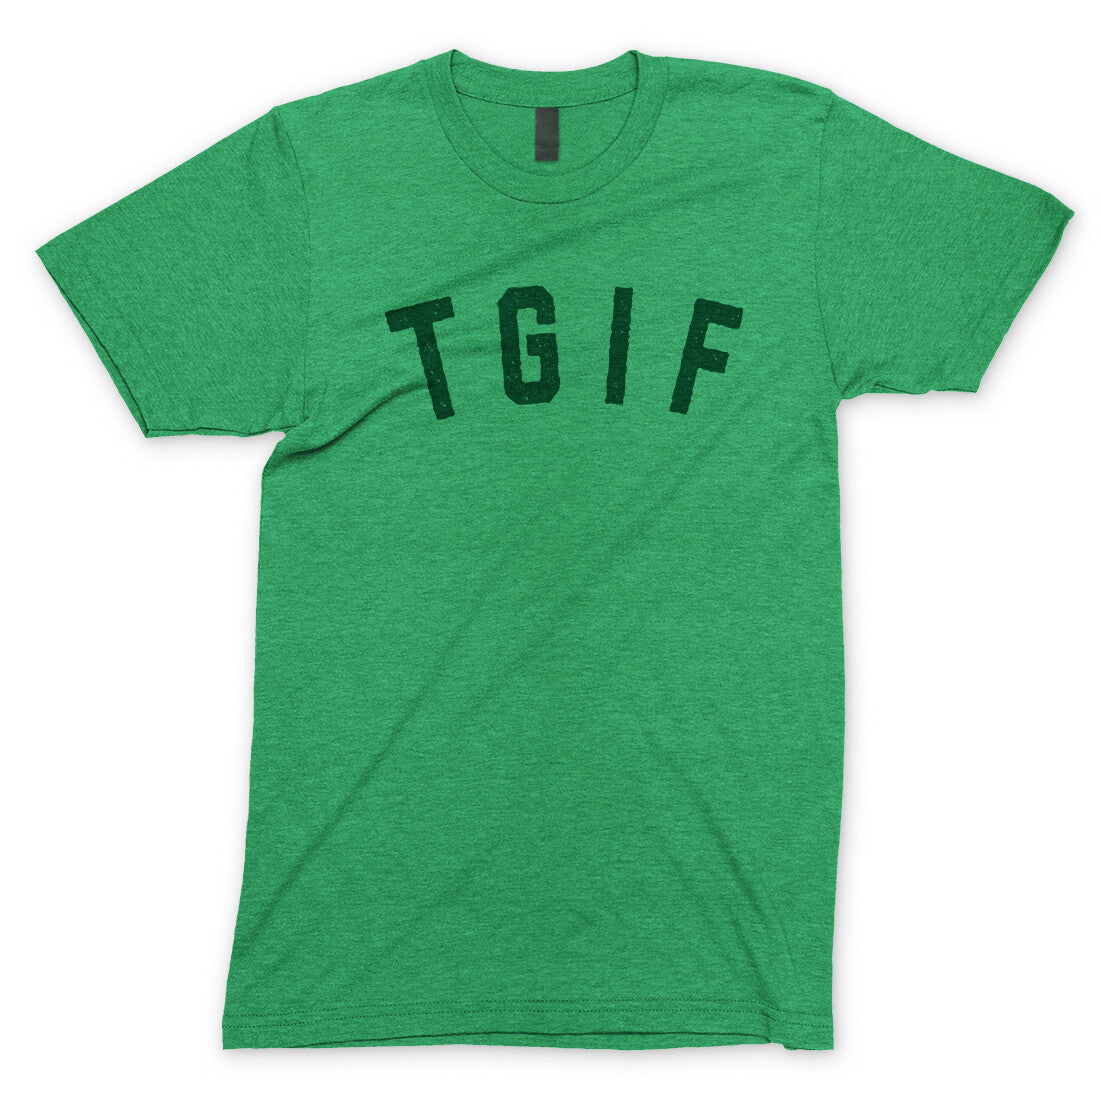 TGIF in Heather Irish Green Color